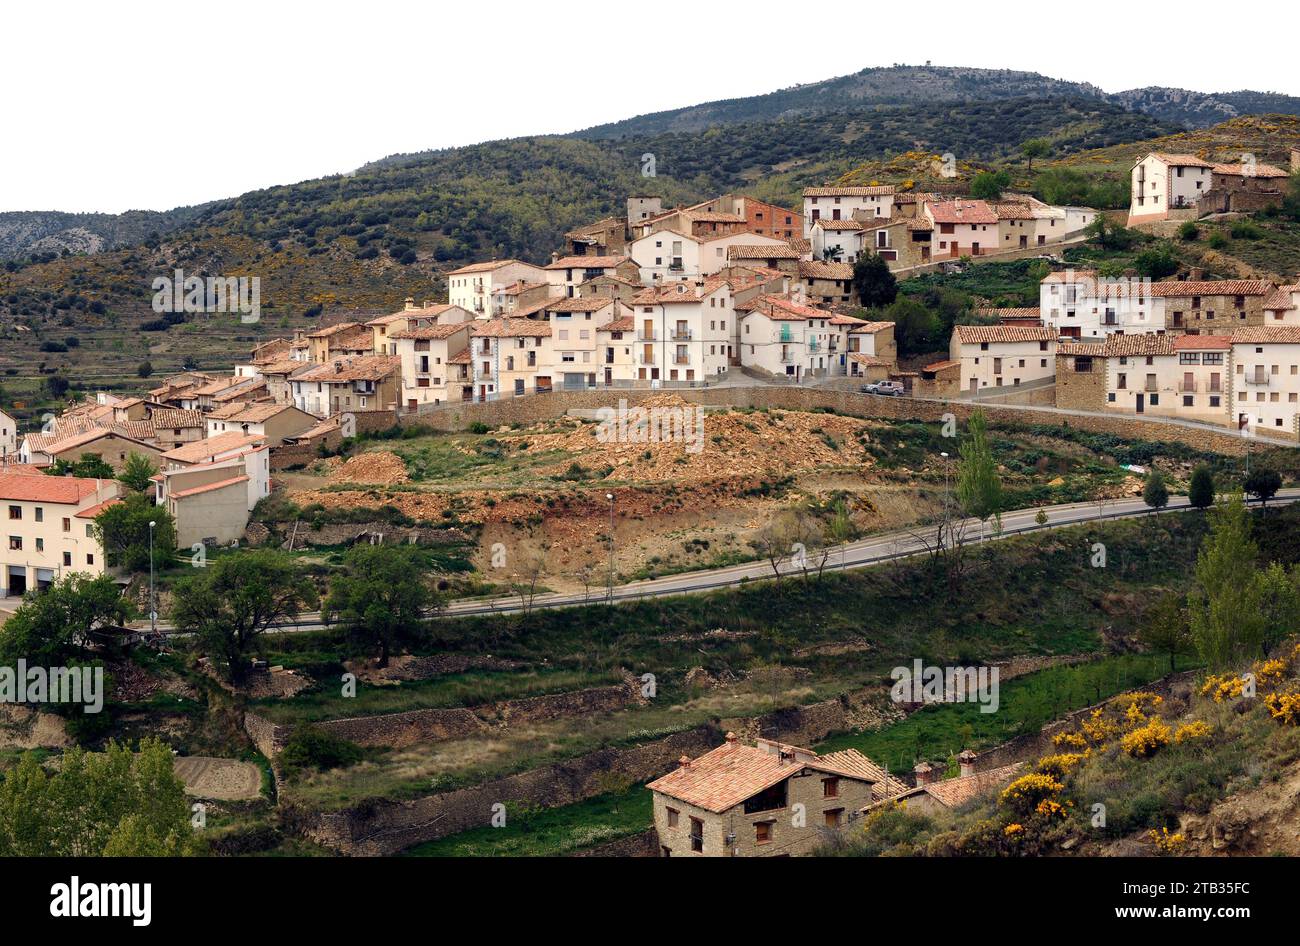 Nogueruelas. Gudar-Javalambre region, Teruel province, Aragon, Spain. Stock Photo